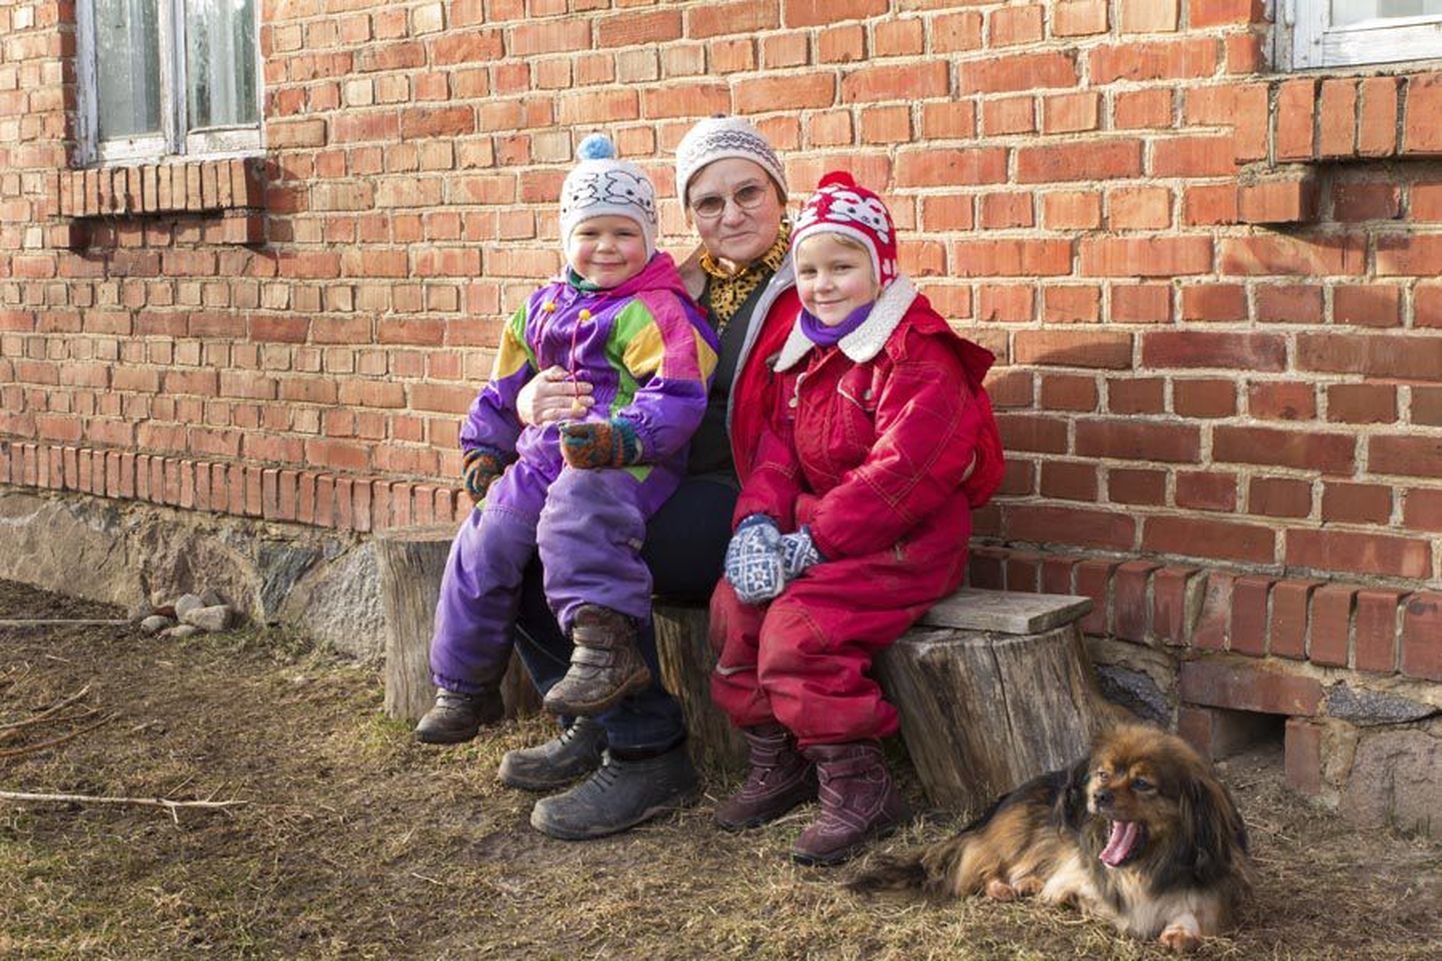 Kahest lotosõbrast oli nõus pildile tulema Niina Jüris, kes võttis kampa lapselapsed Kalmeri ja Pireti ning koer Manni.